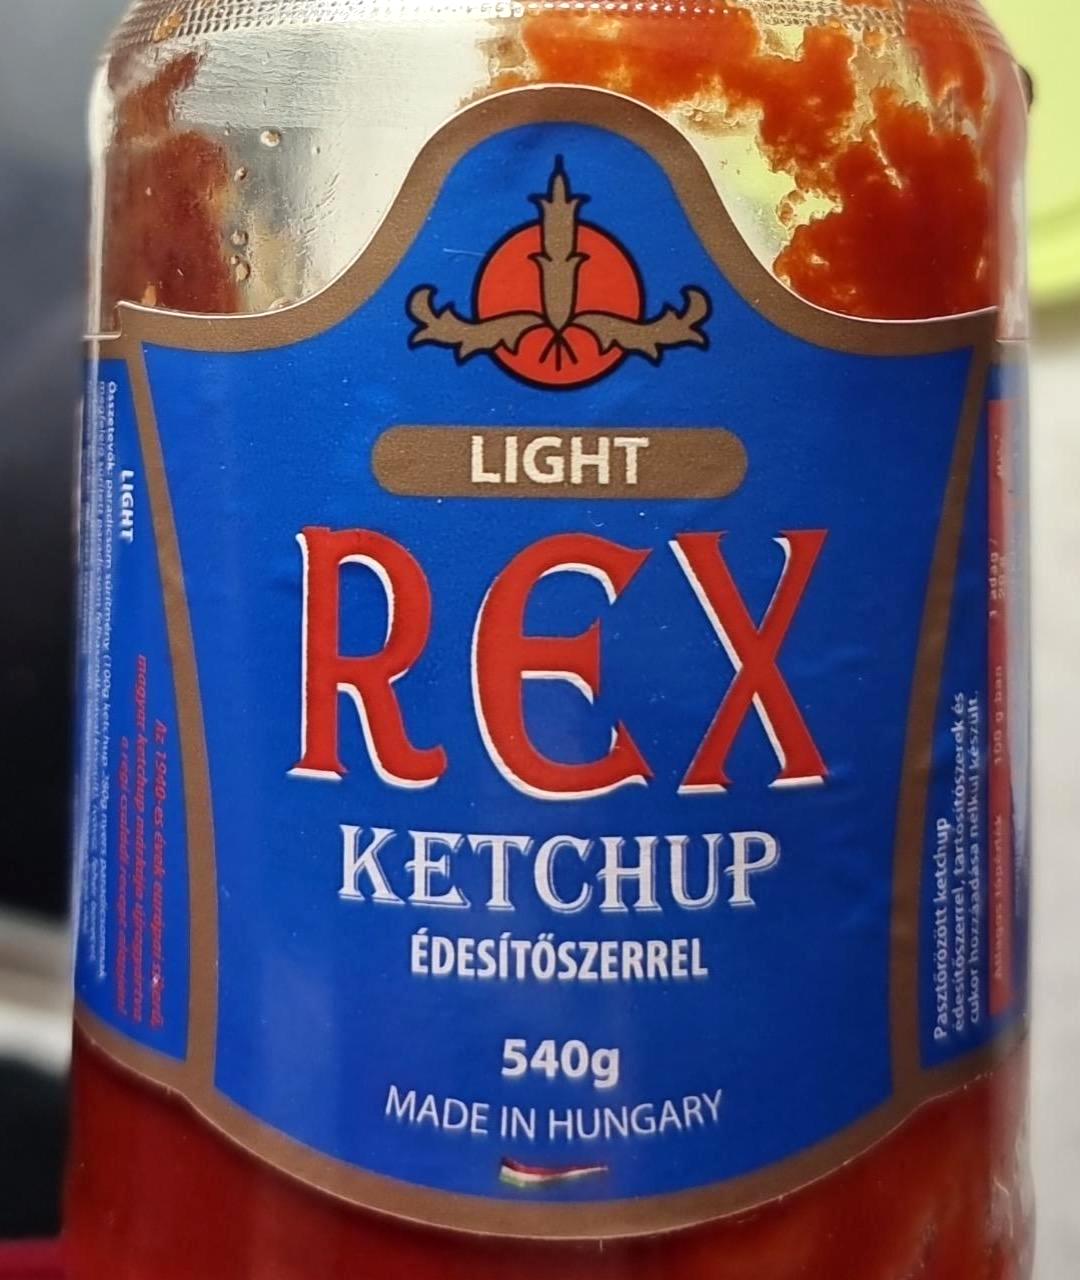 Képek - Light ketchup Rex